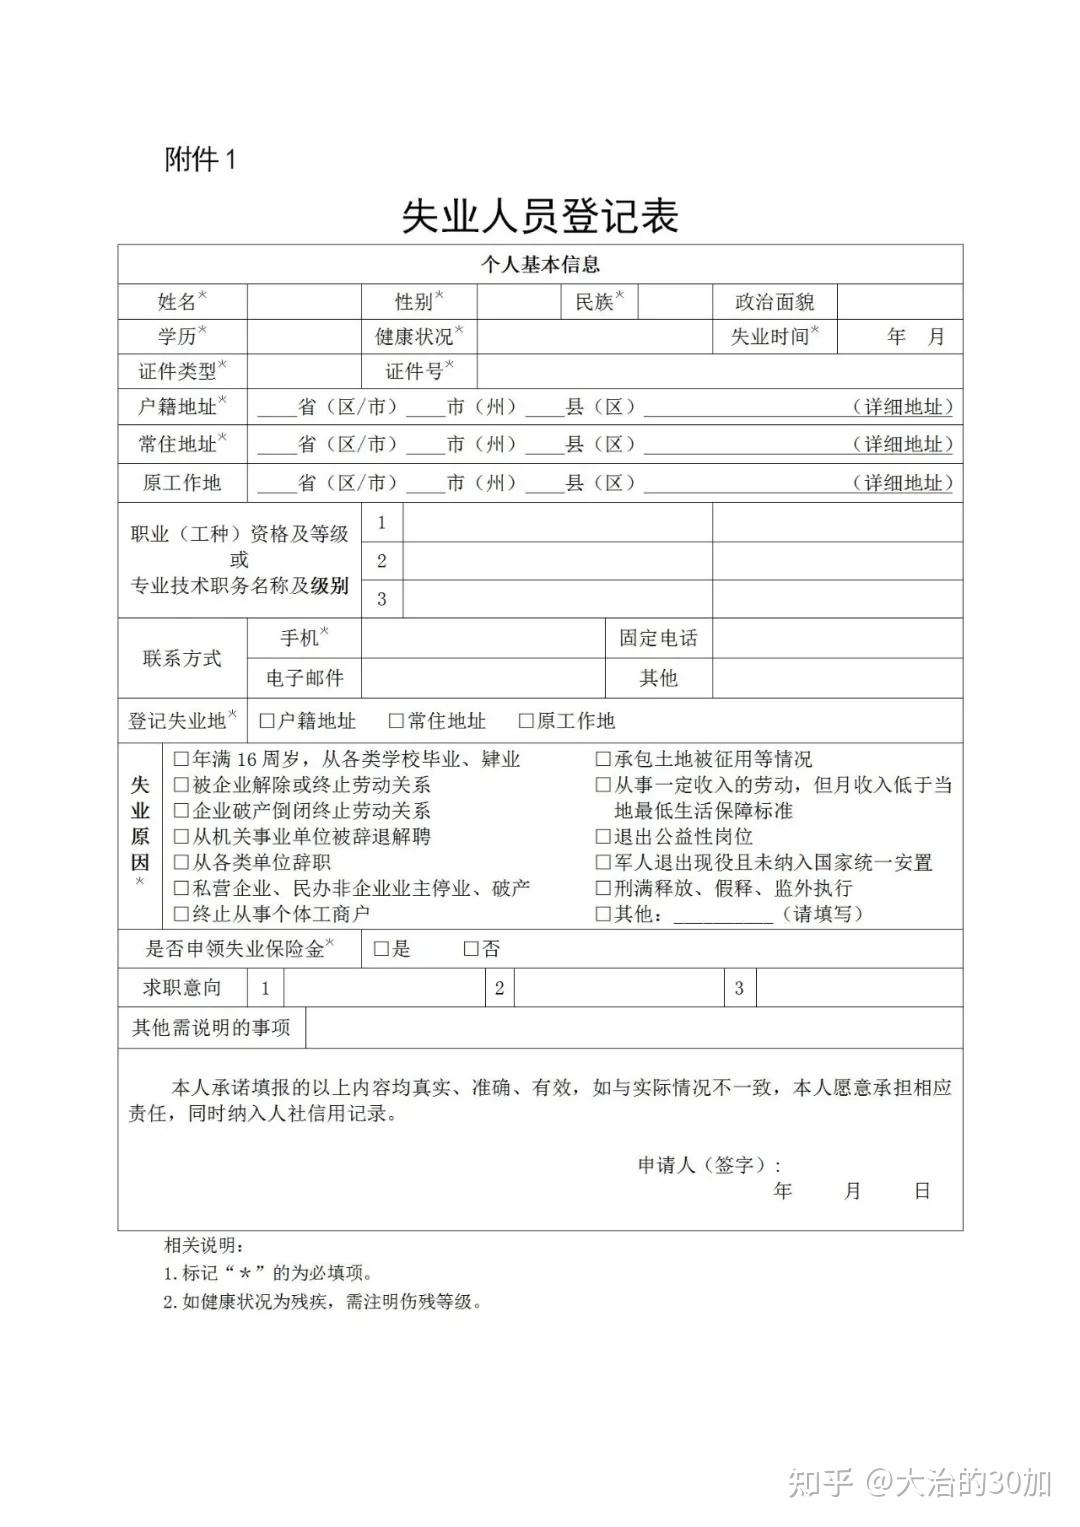 深圳失业登记是承诺制办理的二,《失业证明》如何办理?